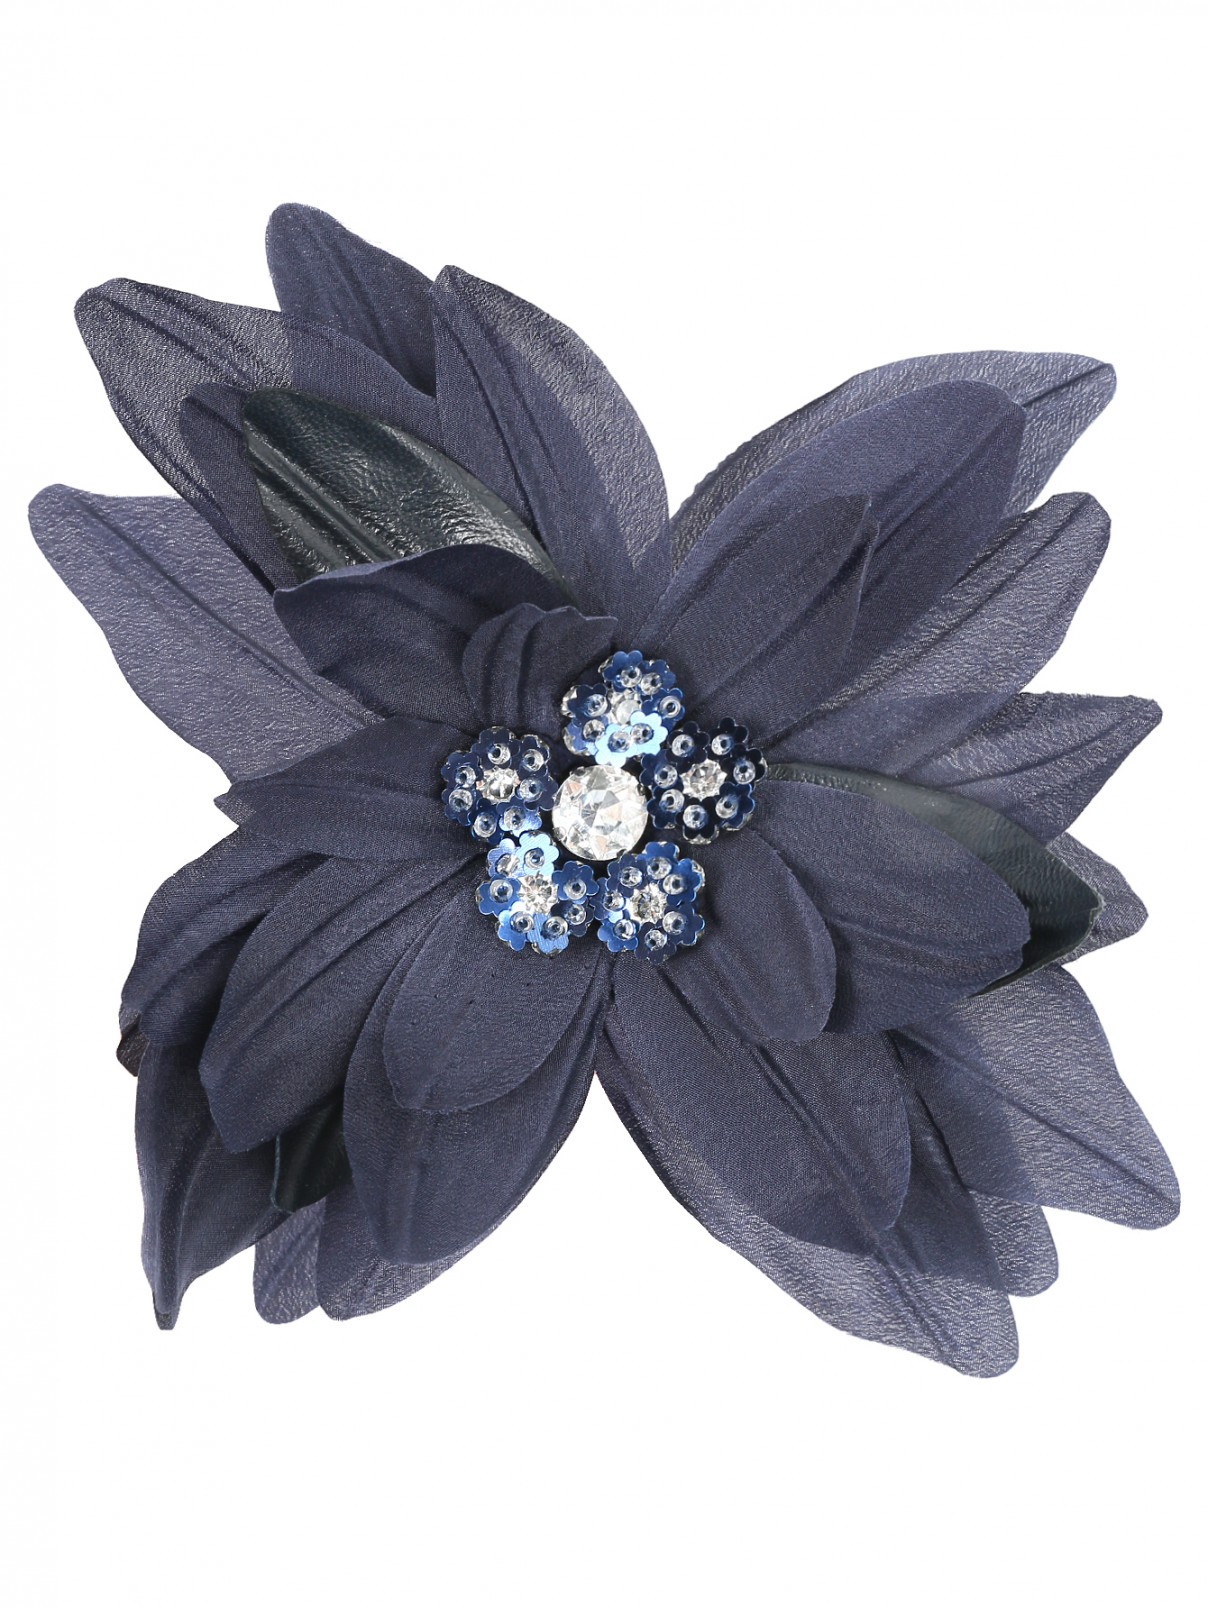 Брошь из текстиля декорированная кристаллами Weekend Max Mara  –  Общий вид  – Цвет:  Синий